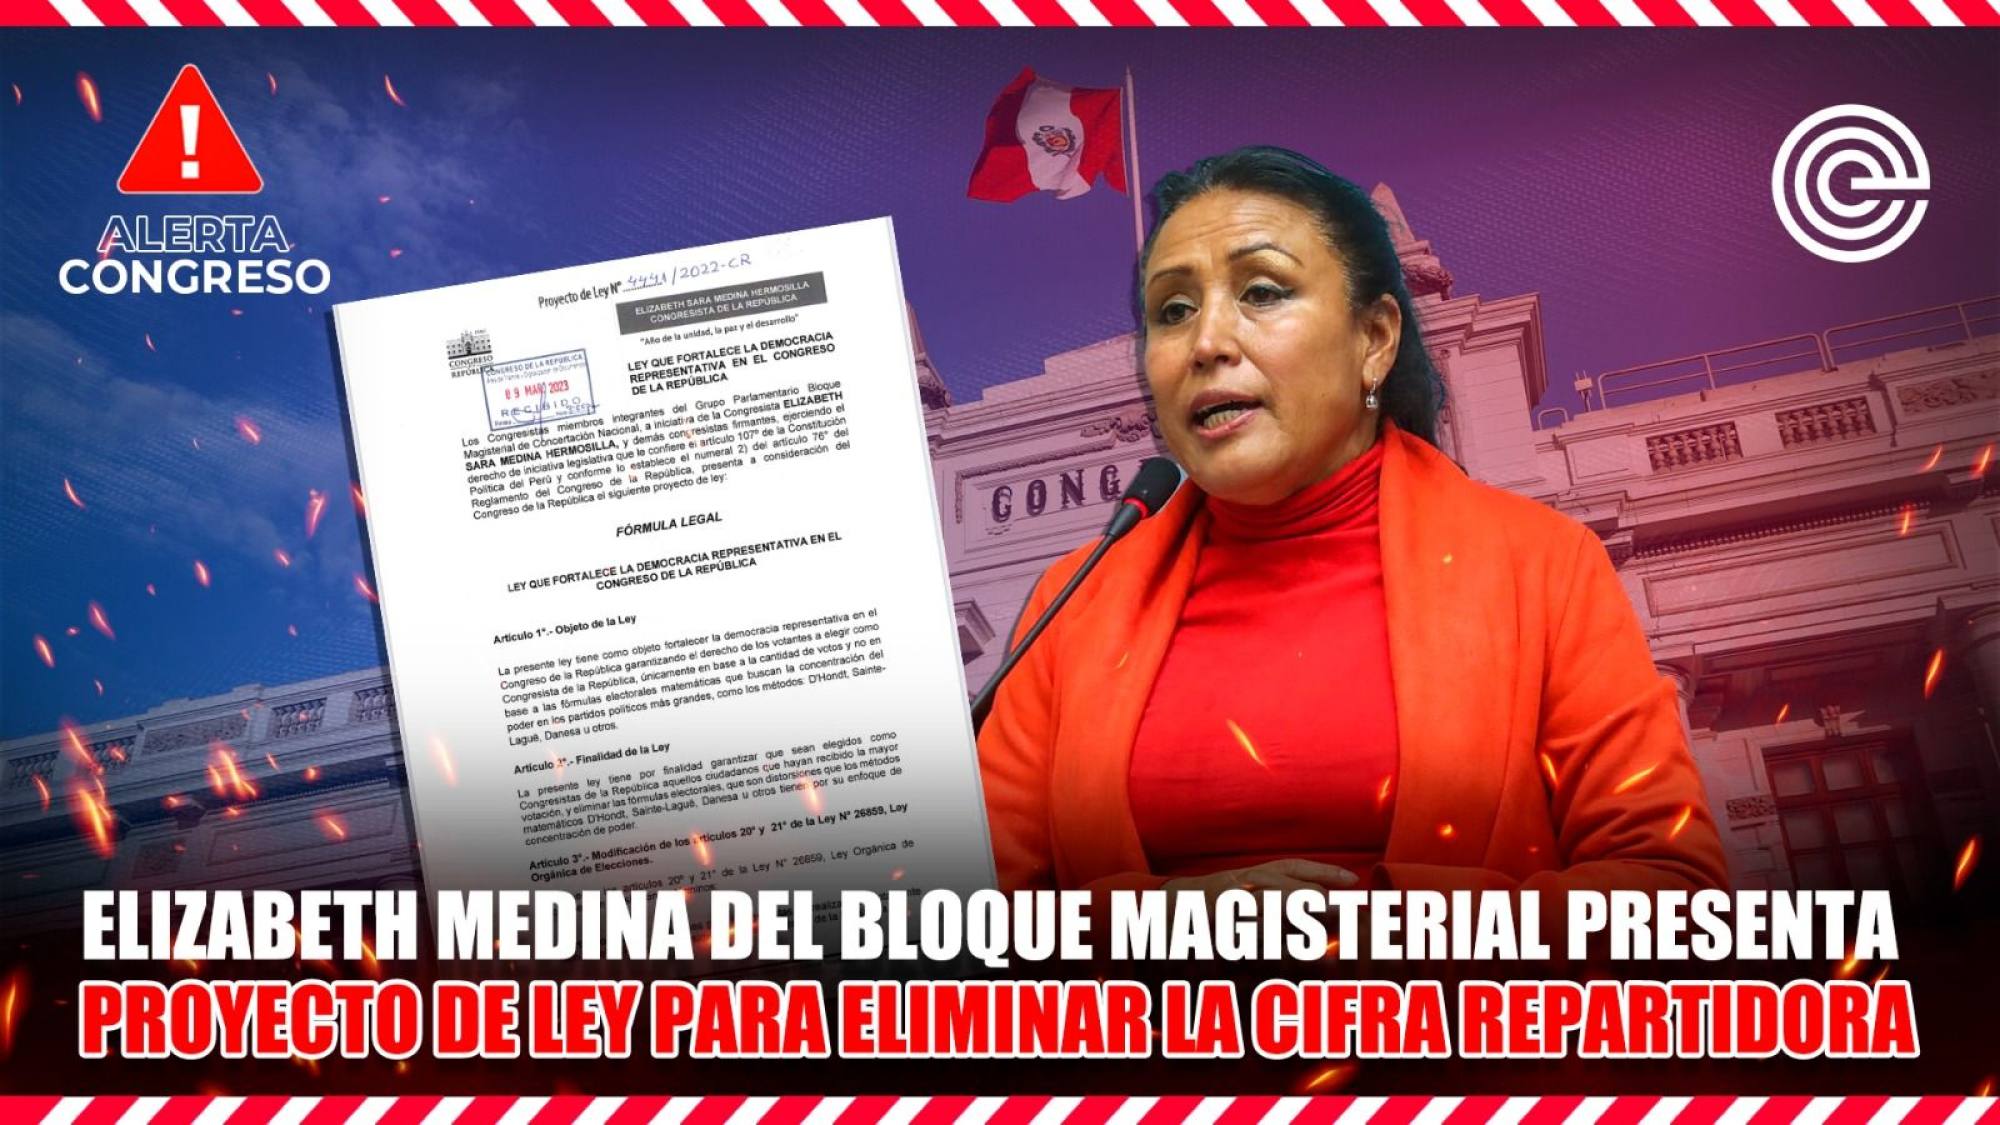 Elizabeth Medina del Bloque Magisterial presenta proyecto de ley para eliminar la cifra repartidora, Epicentro TV